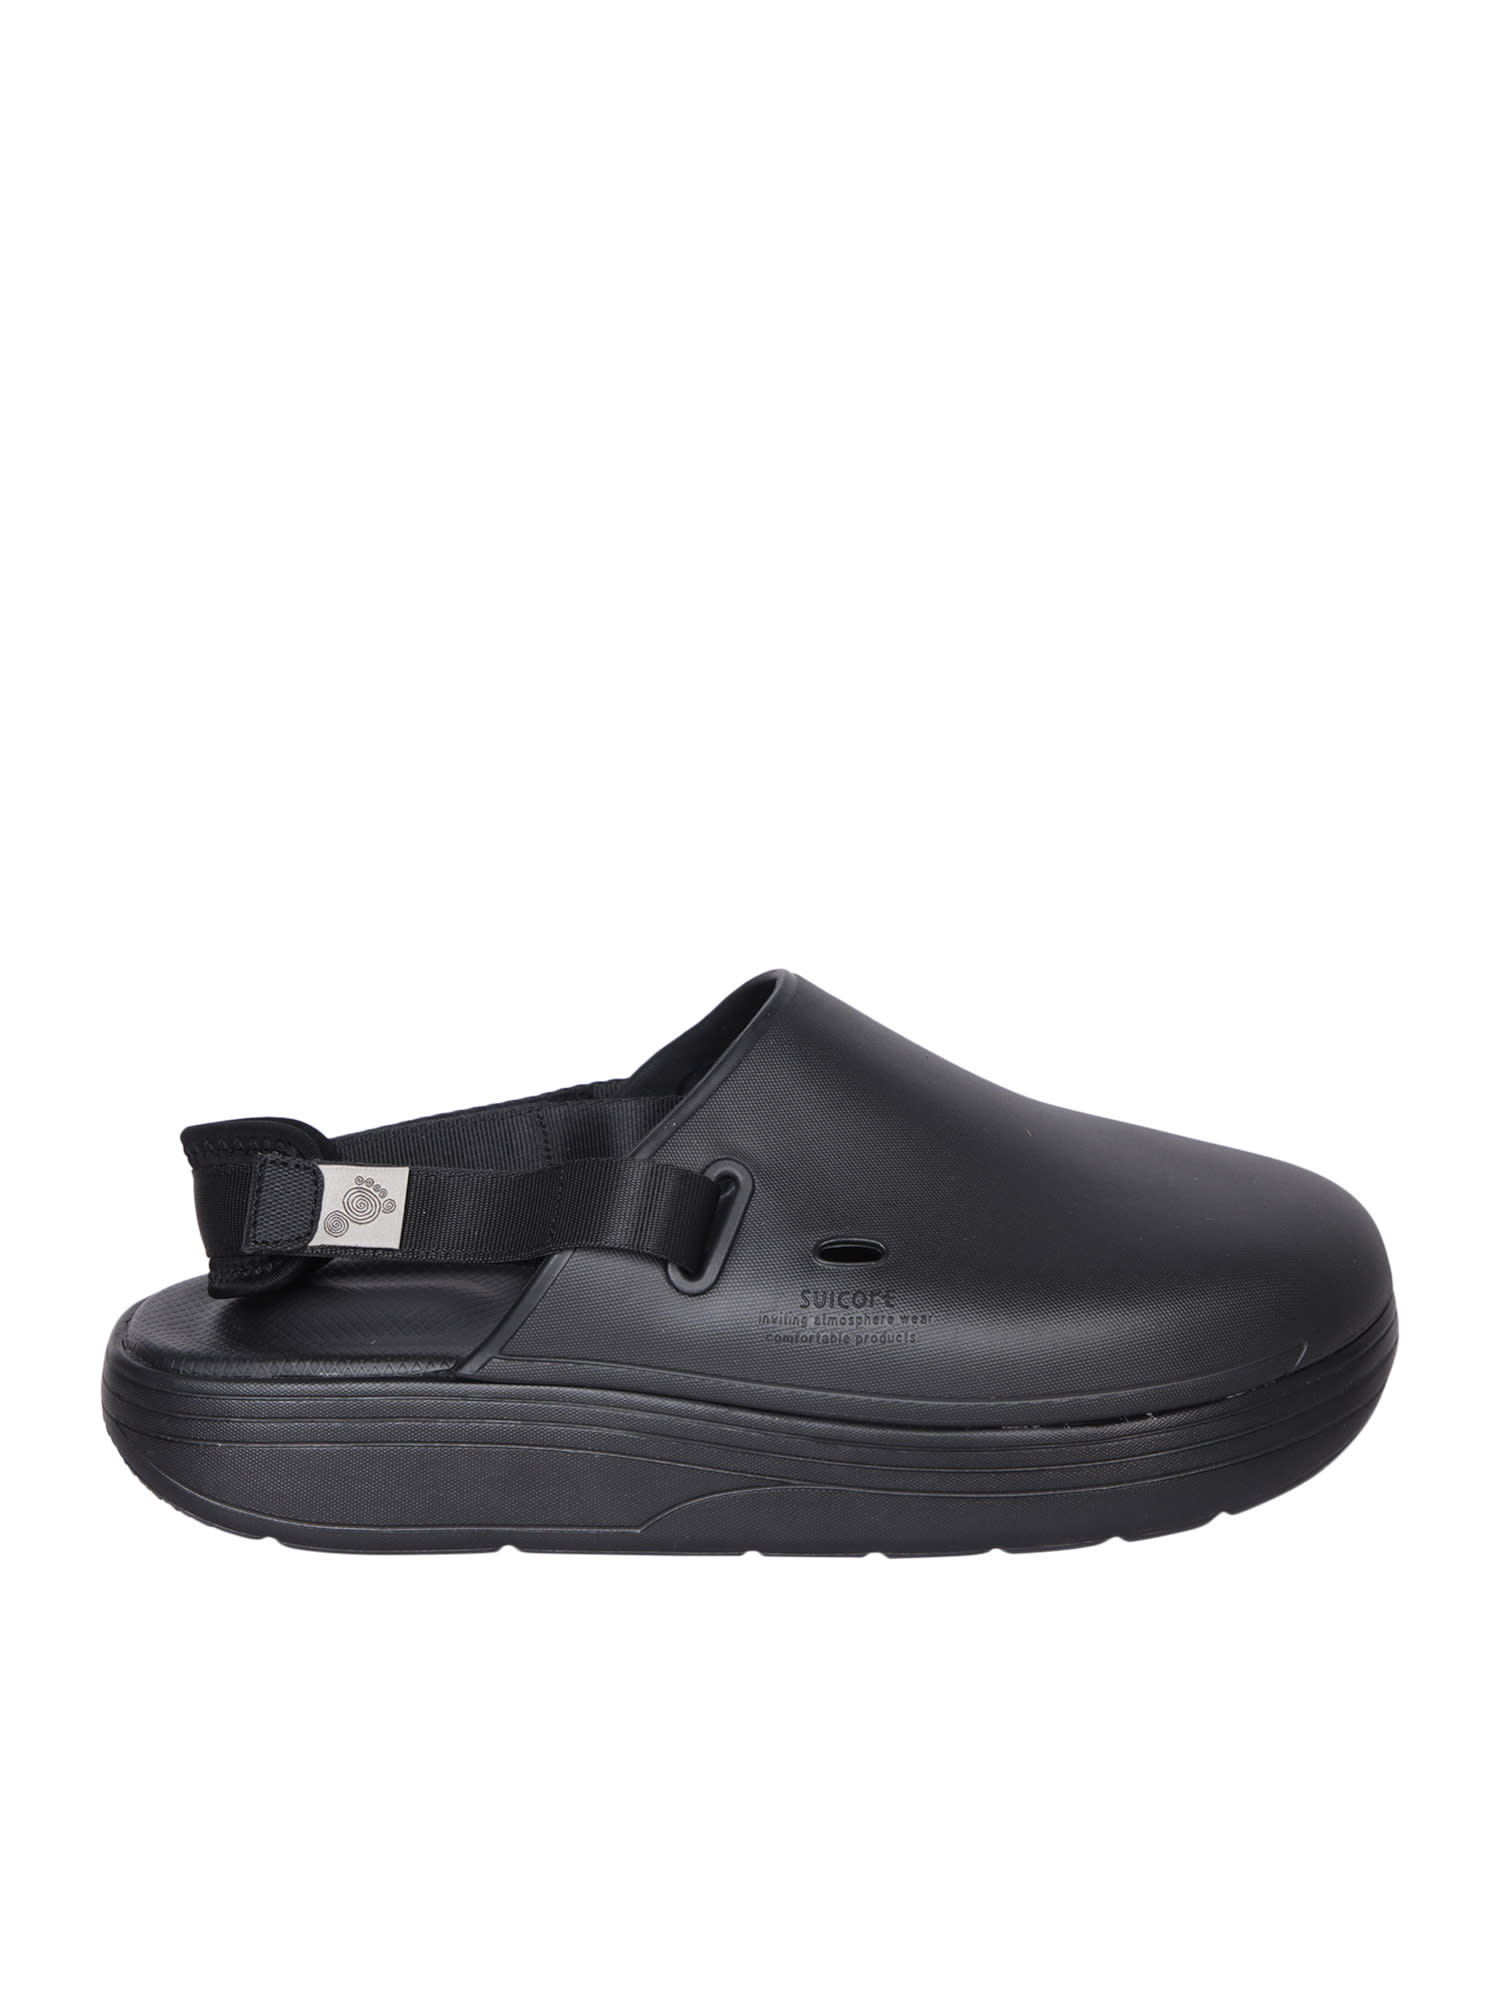 Shop Suicoke Cappo Black Sandals